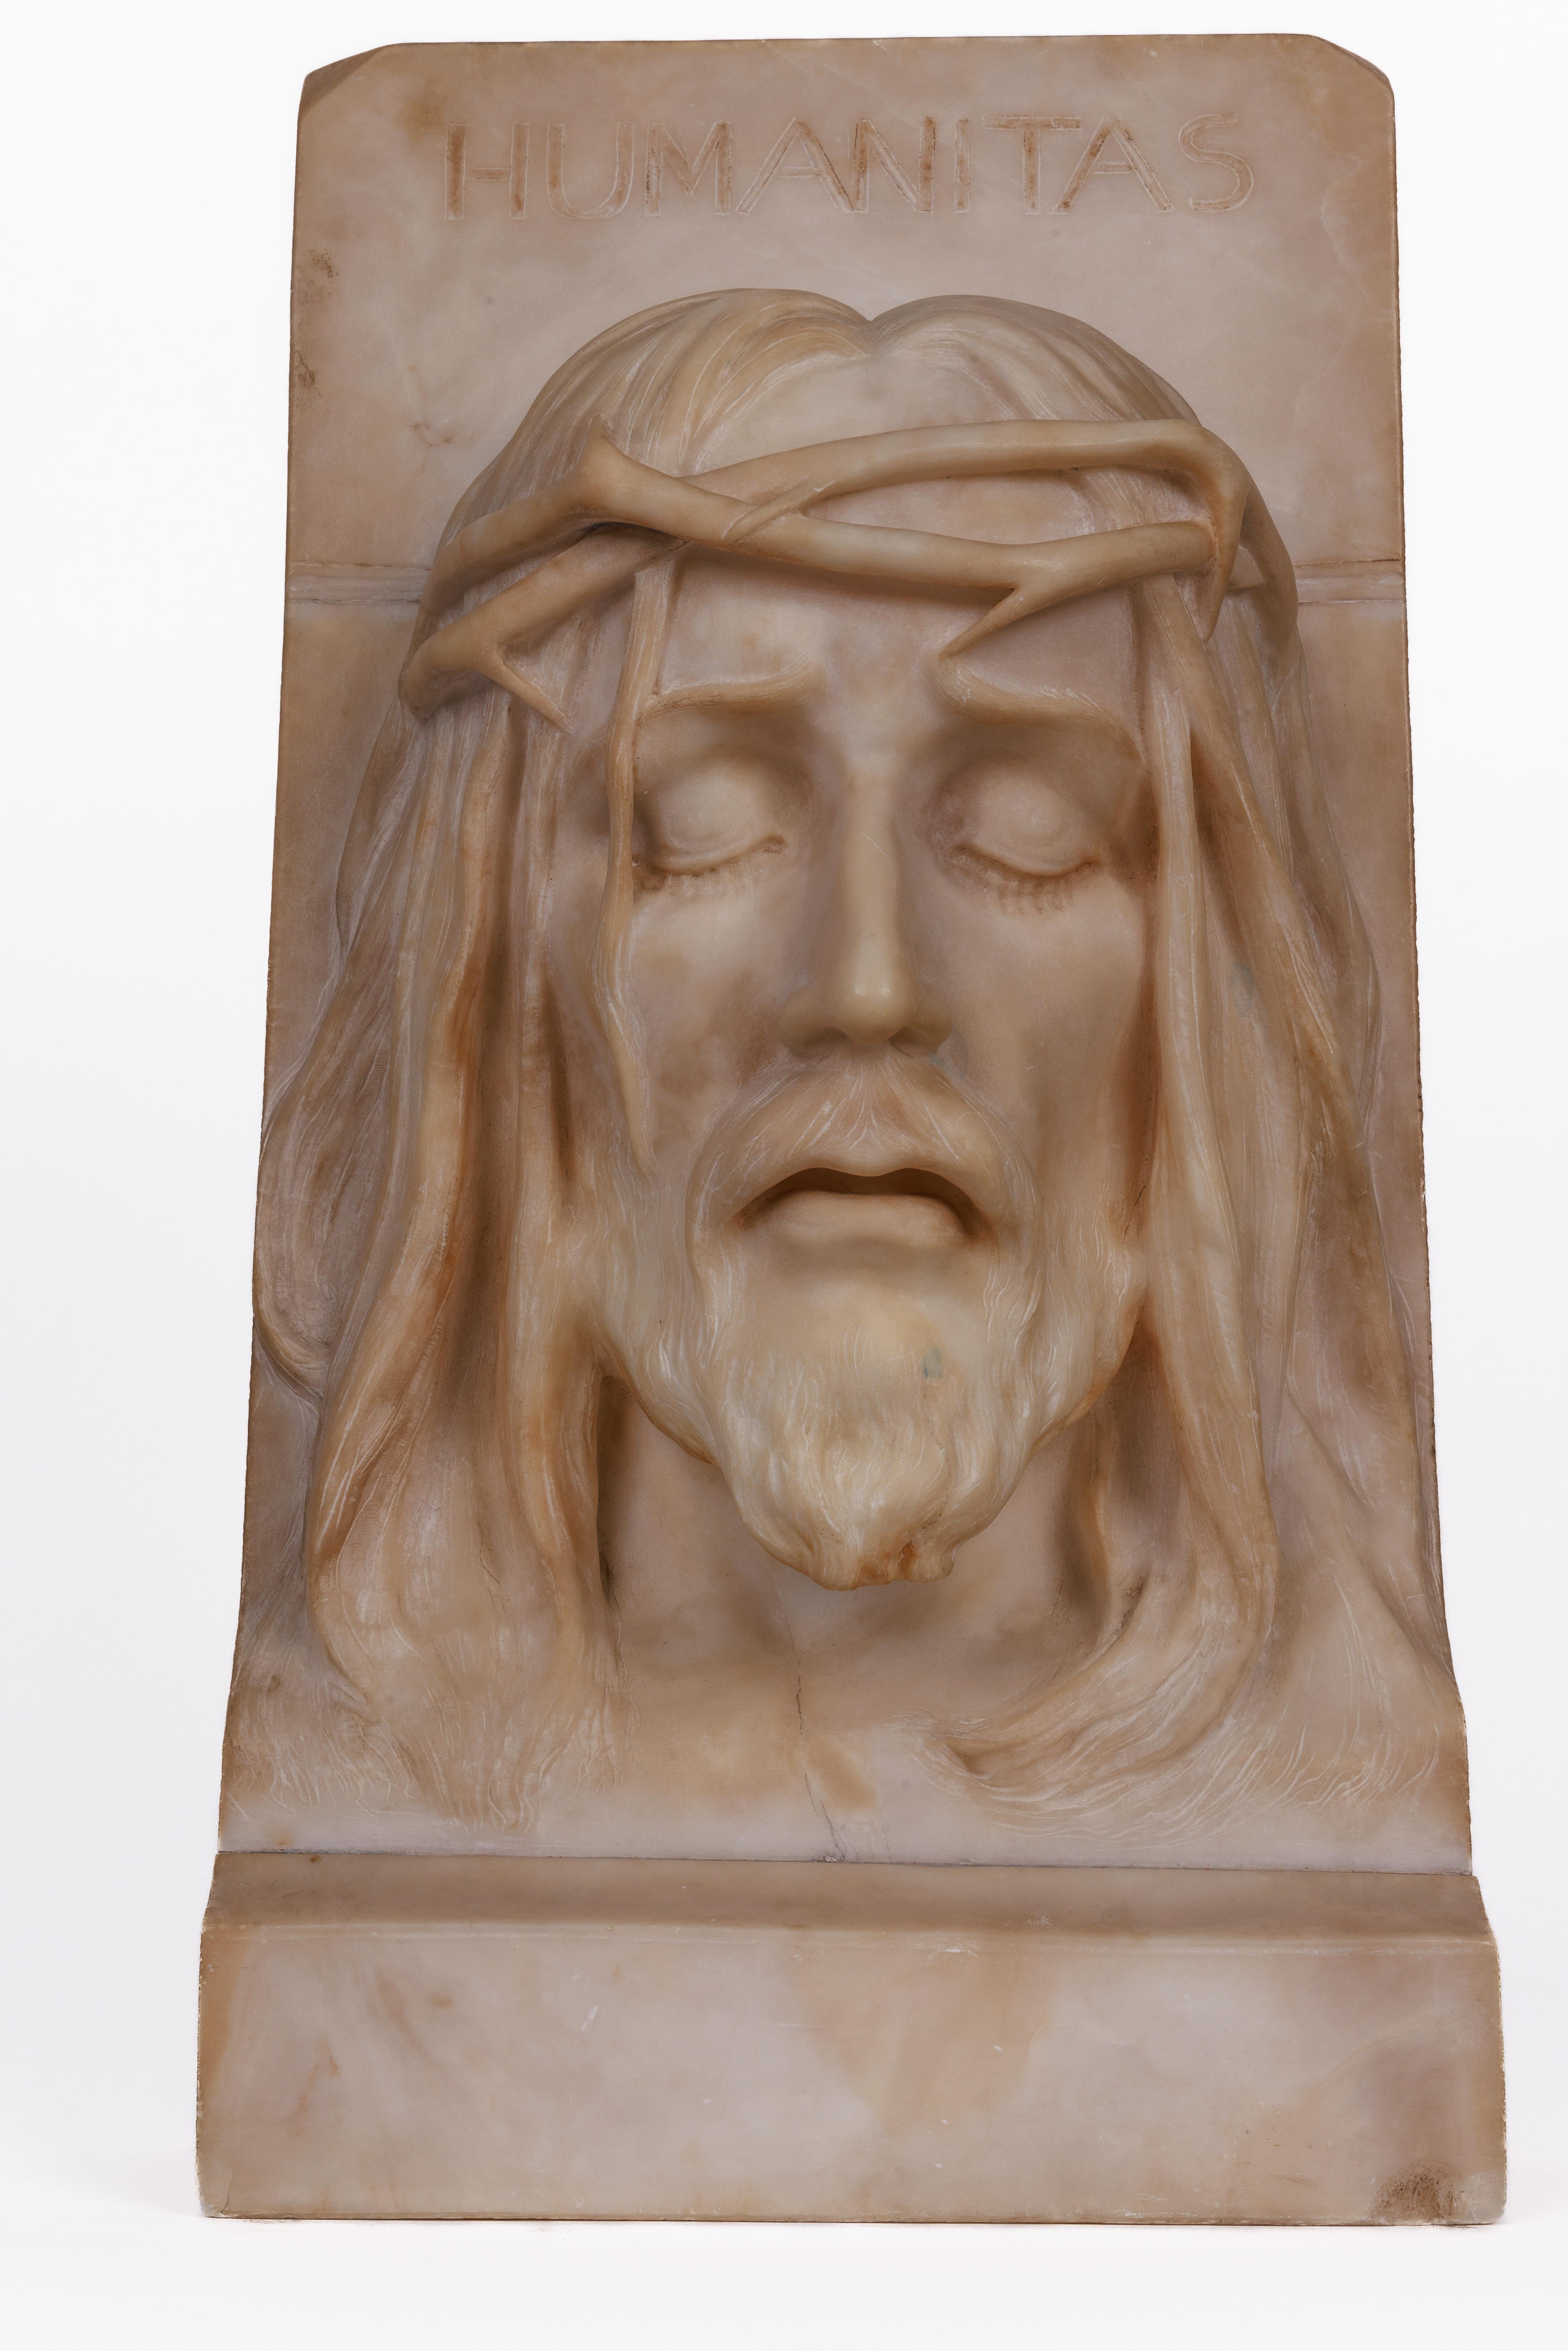 Eine seltene und bedeutende italienische Alabasterbüste von Jesus Christus, um 1860

Eine modellierte Büste des Heiligen Christus mit Dornenkrone, außergewöhnlich und realistisch handgeschnitzt in Rom um 1860 mit der Inschrift 